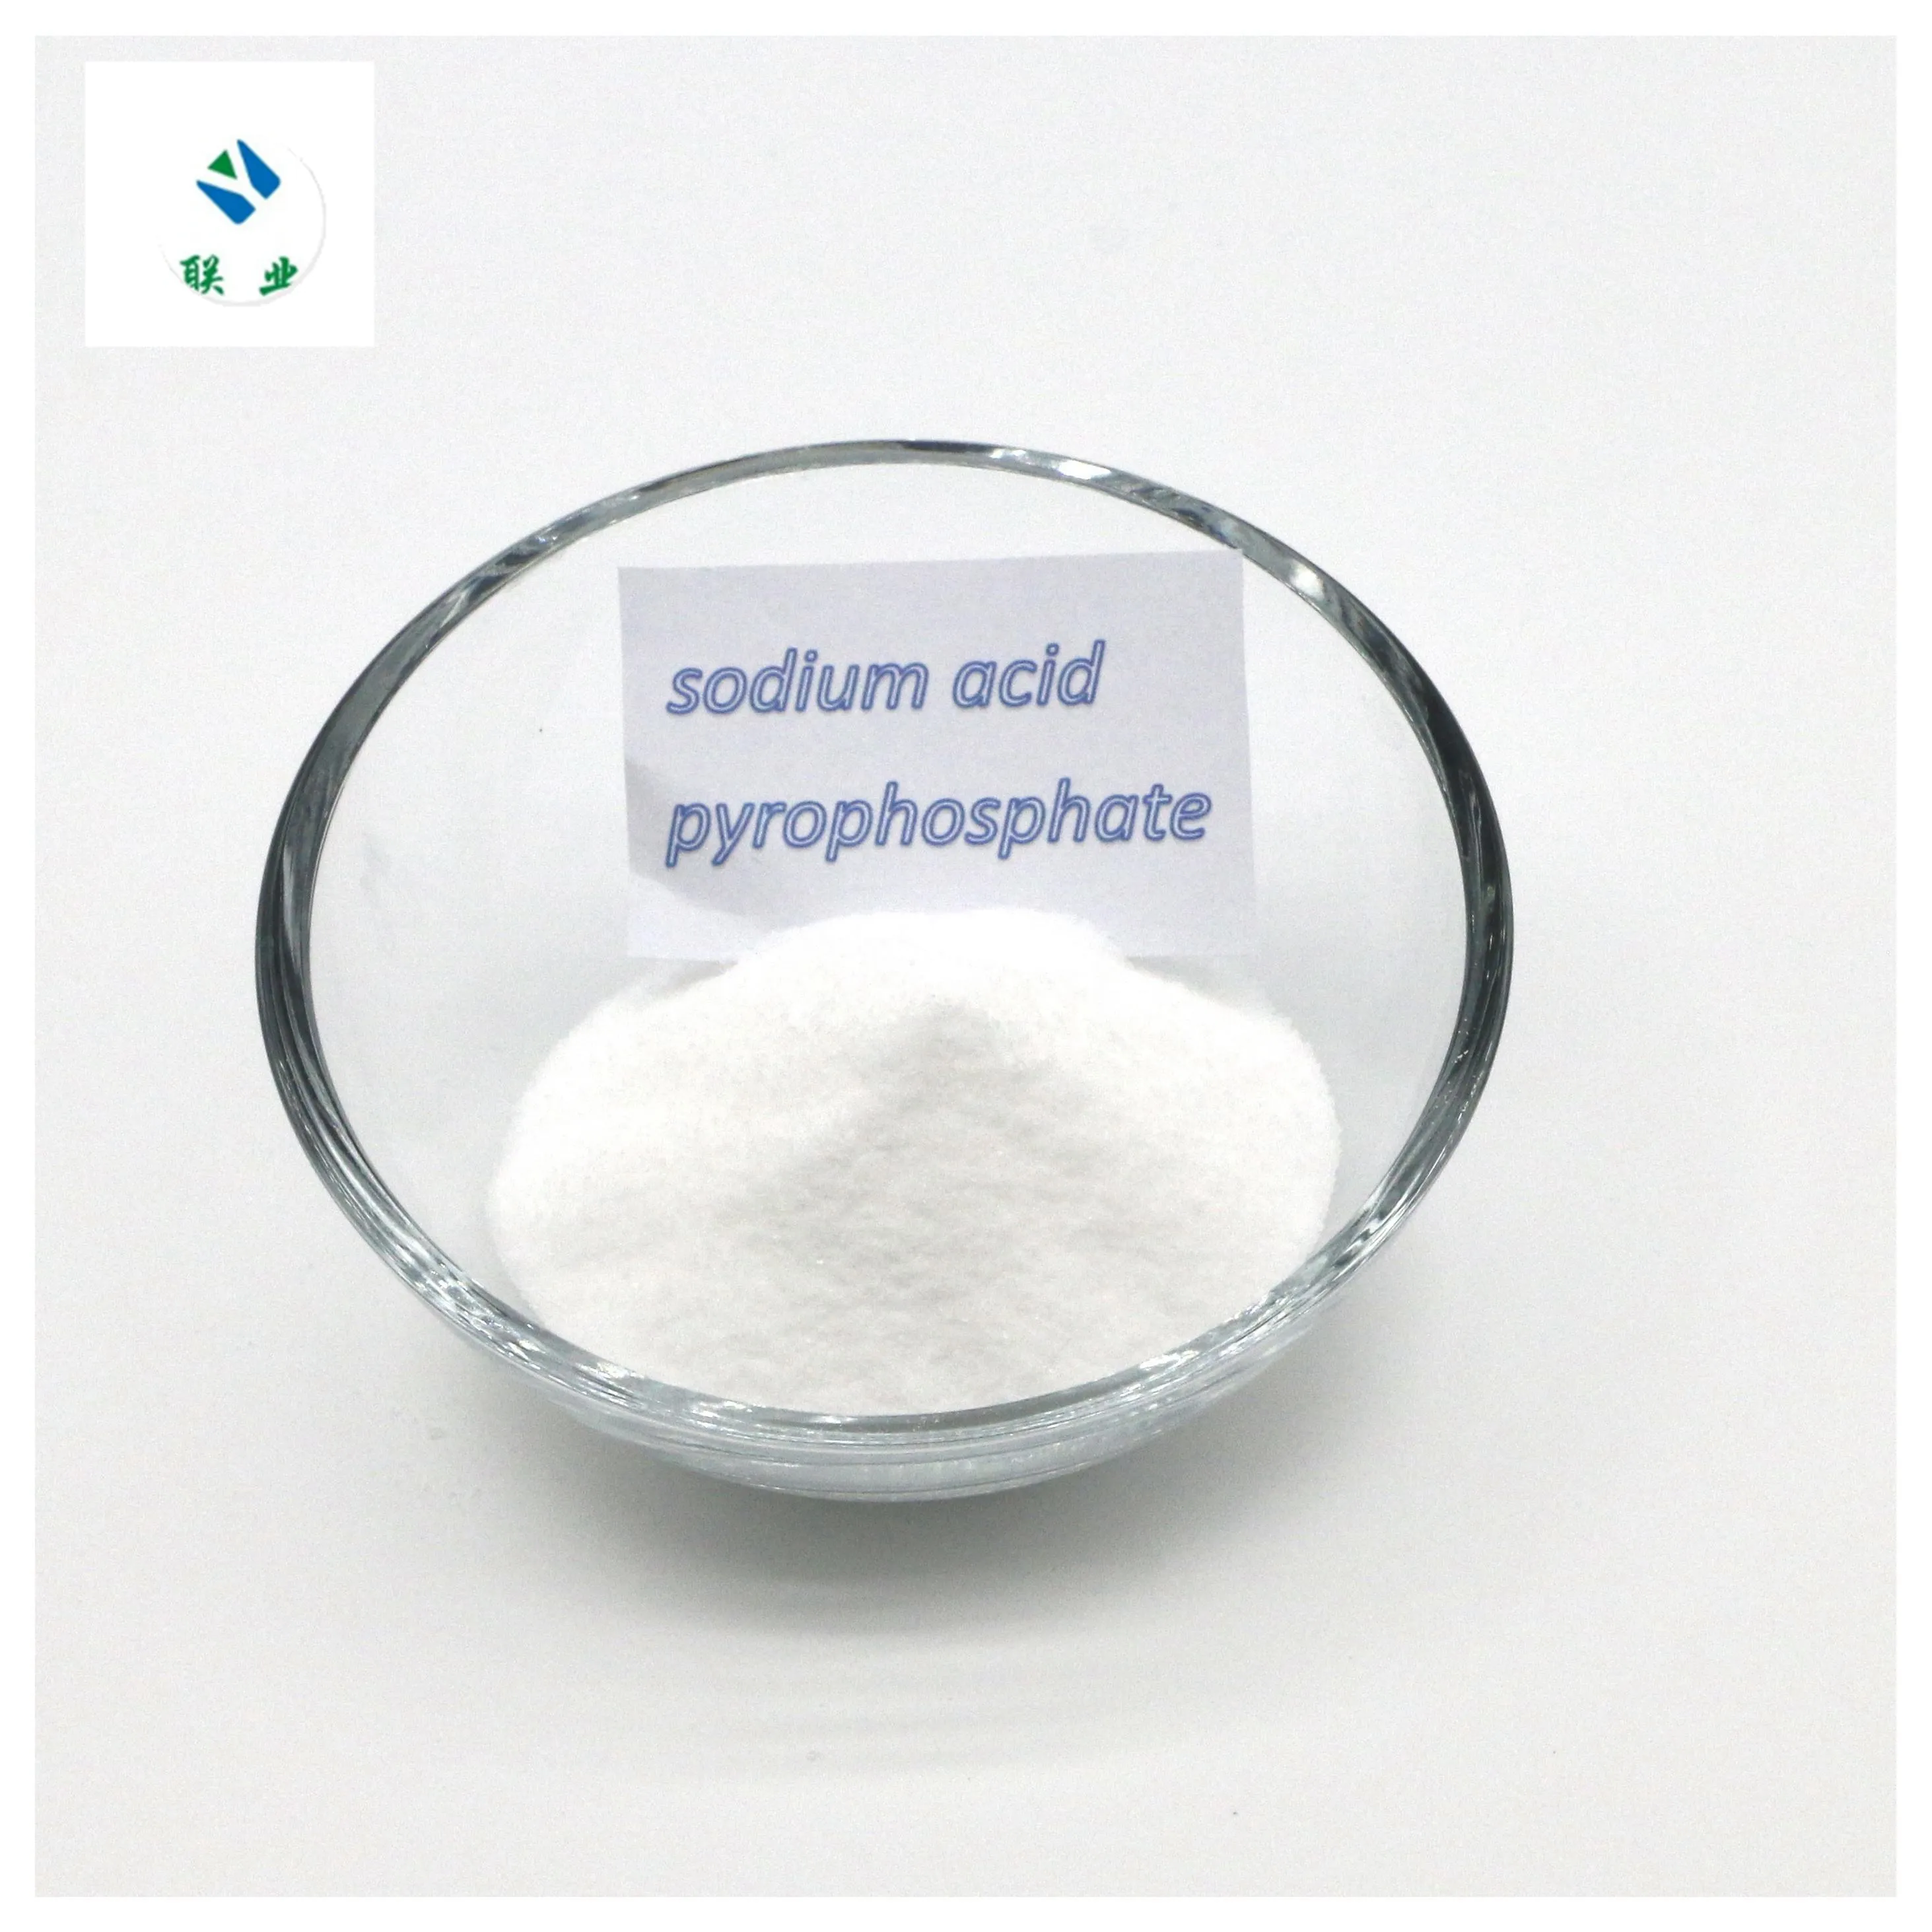 Melhor preço Sapp de qualidade alimentar/pirofosfato di-hidrogênio dissódico/pirofosfato ácido de sódio